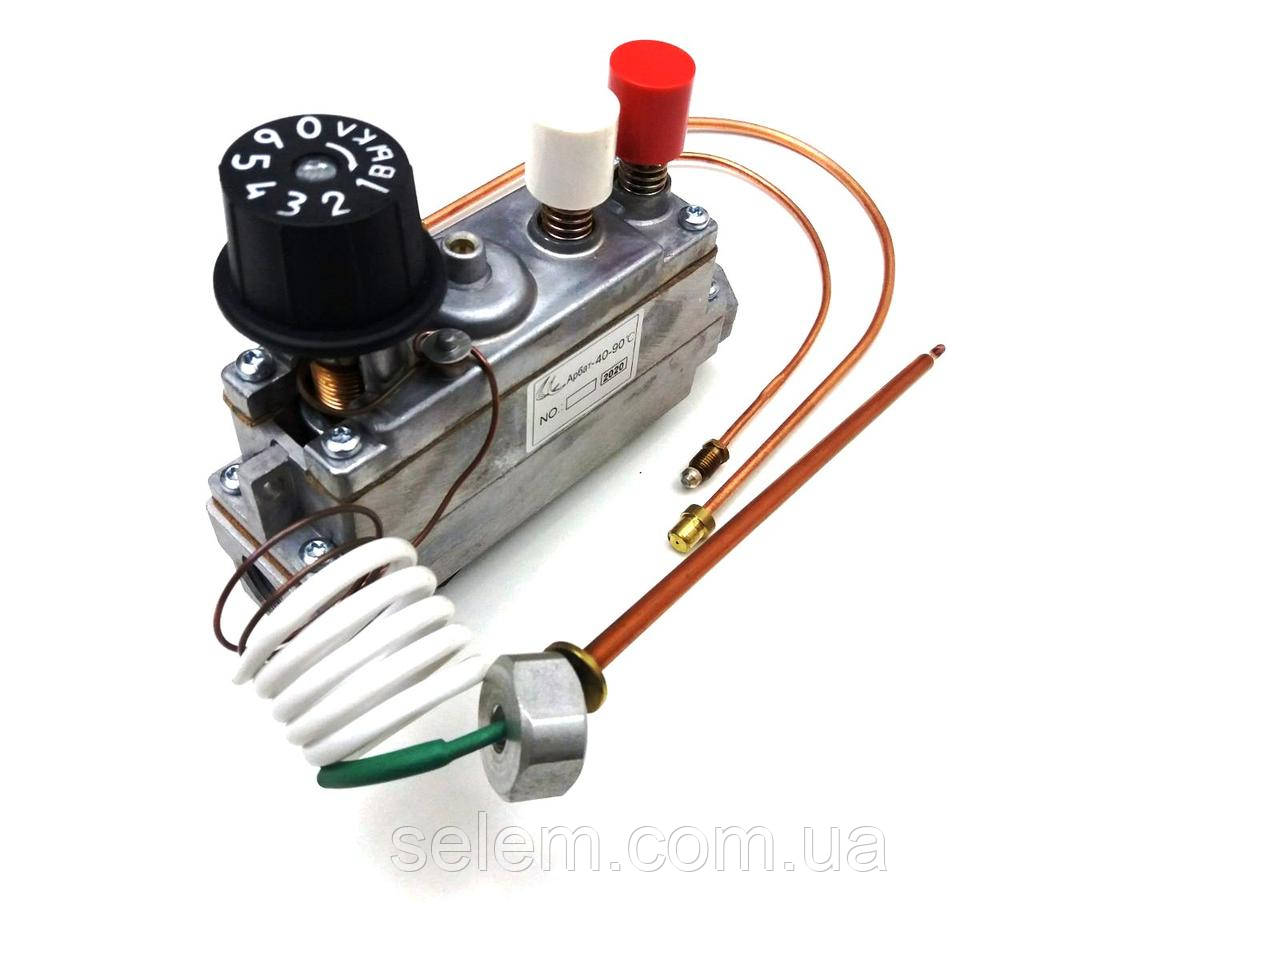 Котлова газова автоматика АРБАТ-1 (11) з мокрим сильфоном у комплекті.